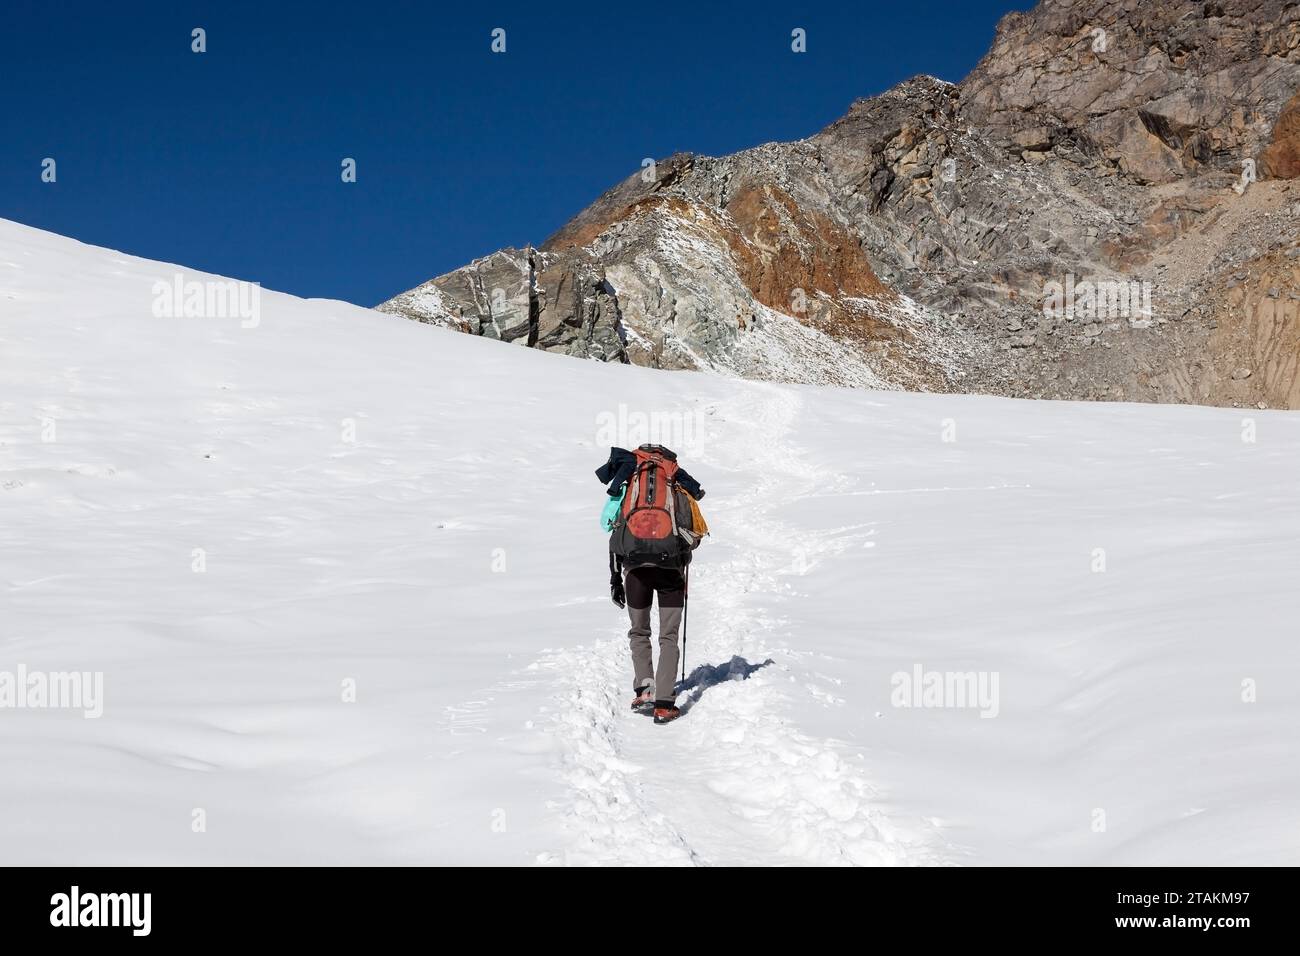 Extremes Wanderkonzept für Alleinreisende. Alleinreisender, der im tiefen Schnee den Berg hinauf geht, mit großem, schwerem Rucksack und Trekkingstock. Alpines Abenteuer - Mount Stockfoto